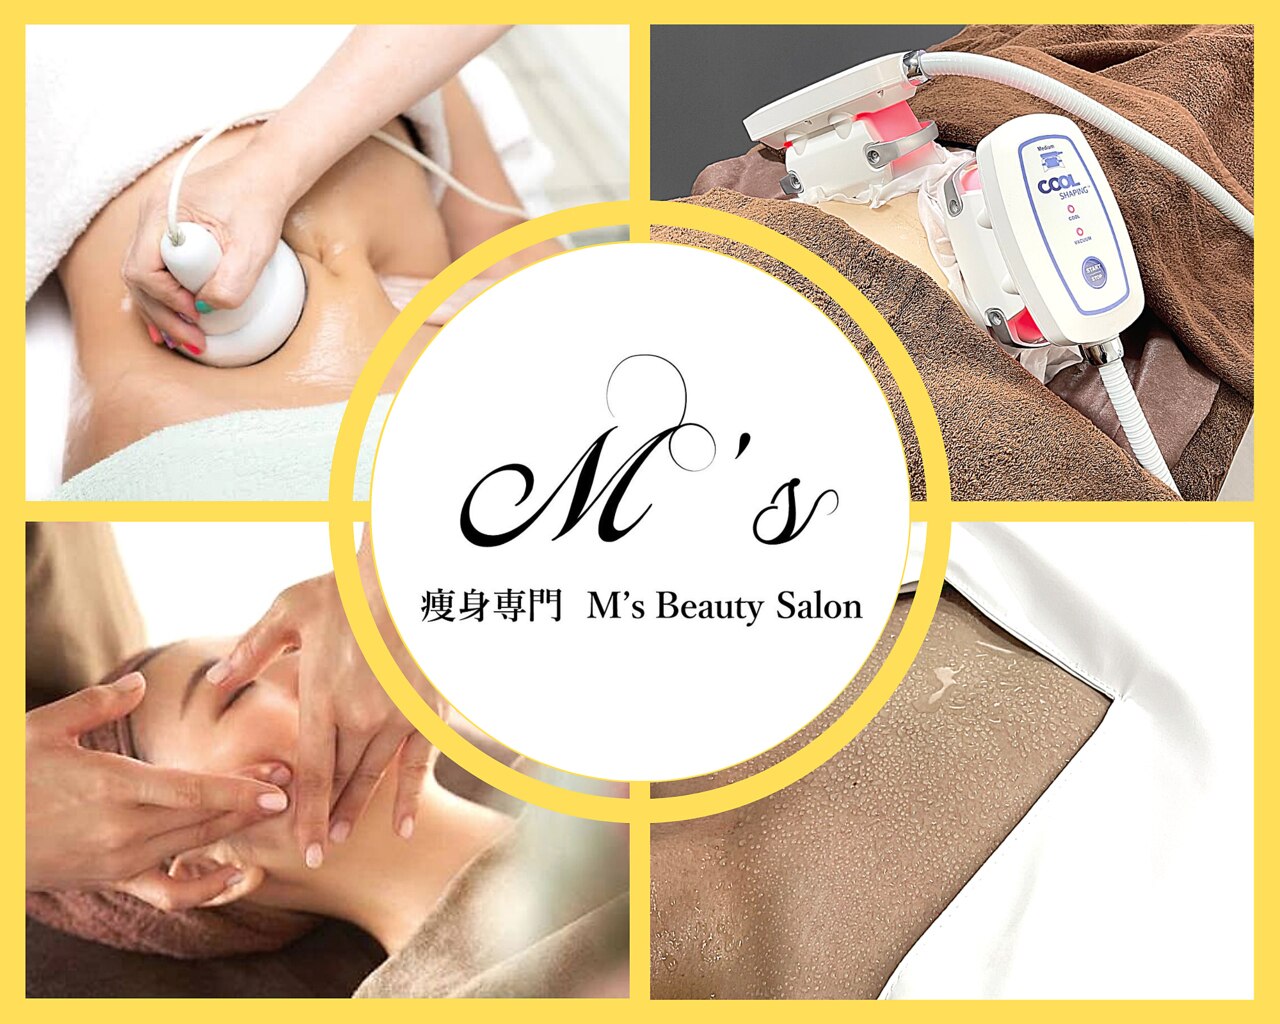 エムズビューティーサロン(M's Beauty Salon)の紹介画像